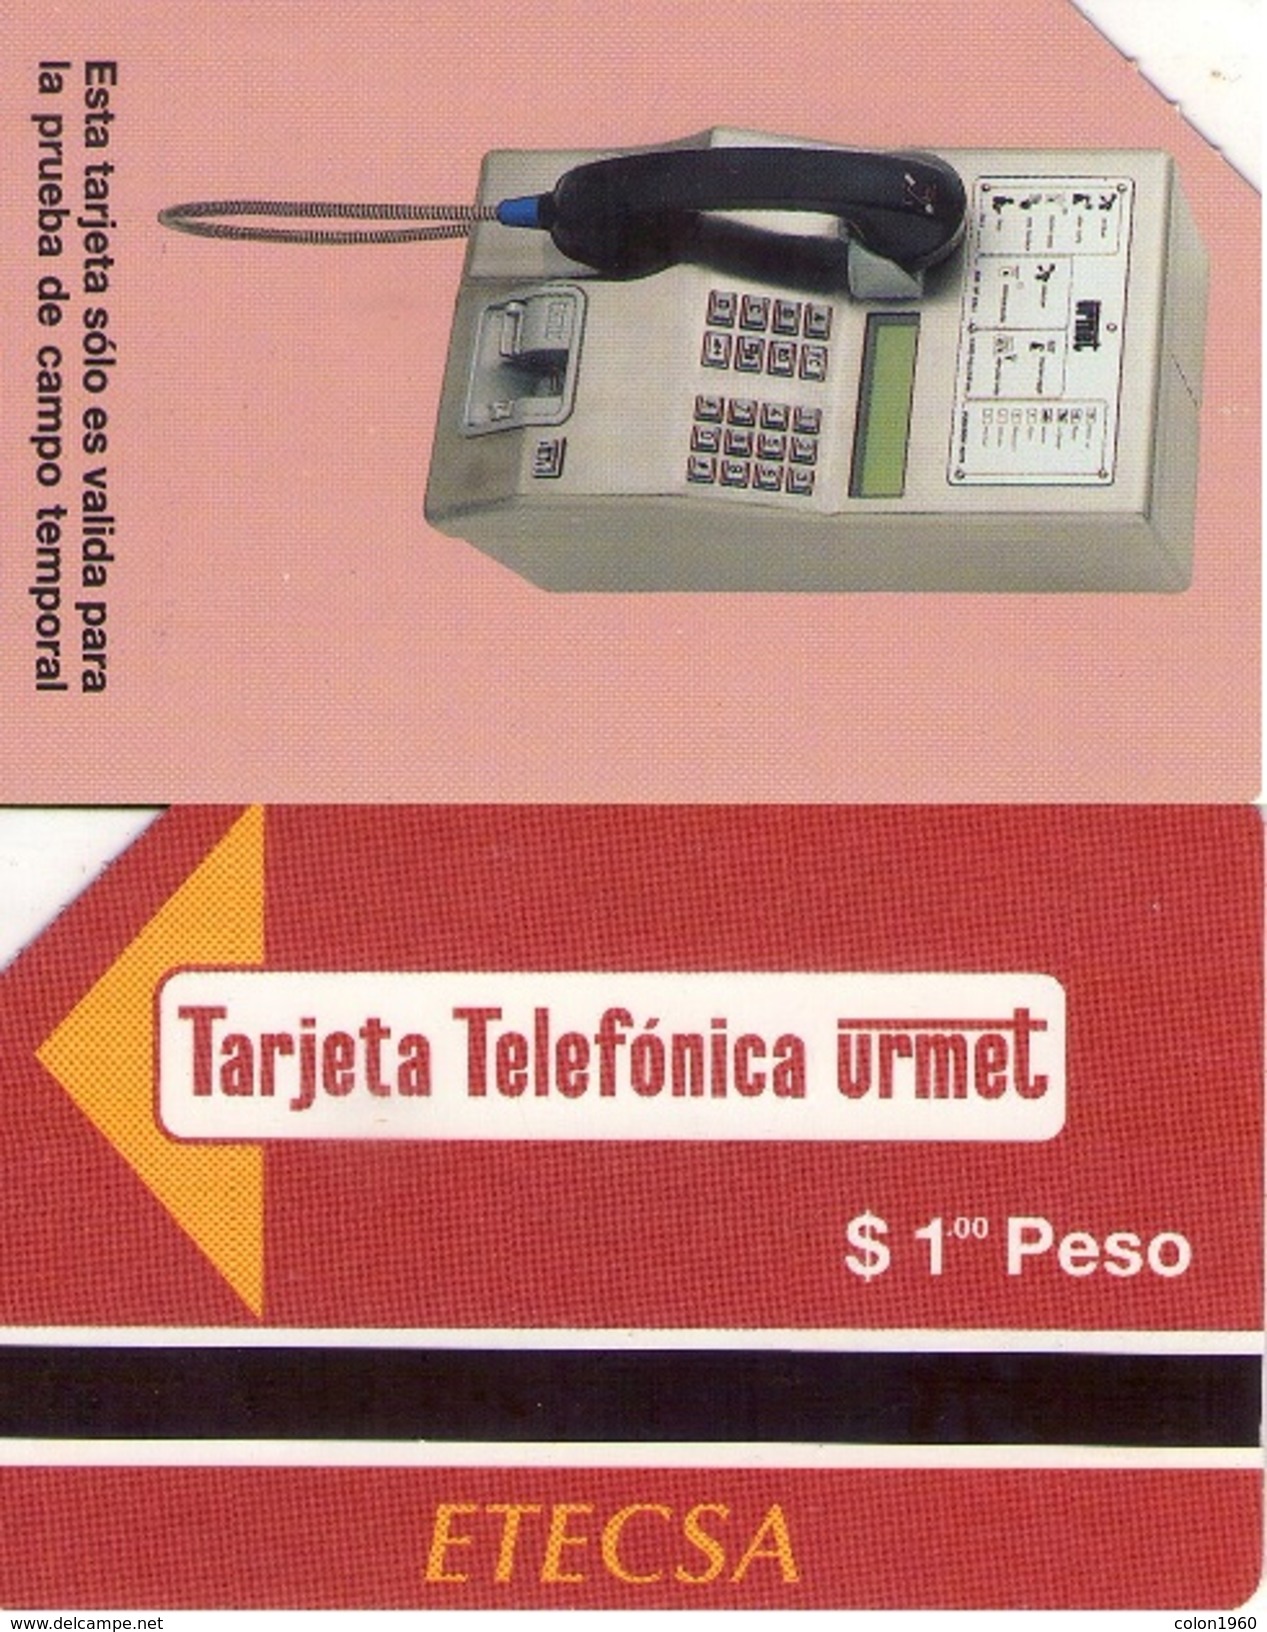 CUBA. Tarjeta Telefonica URMET. 1,00$. 1997-07. CU-ETE-TRL-0001. (281) PRUEBA DE CAMPO. - Cuba